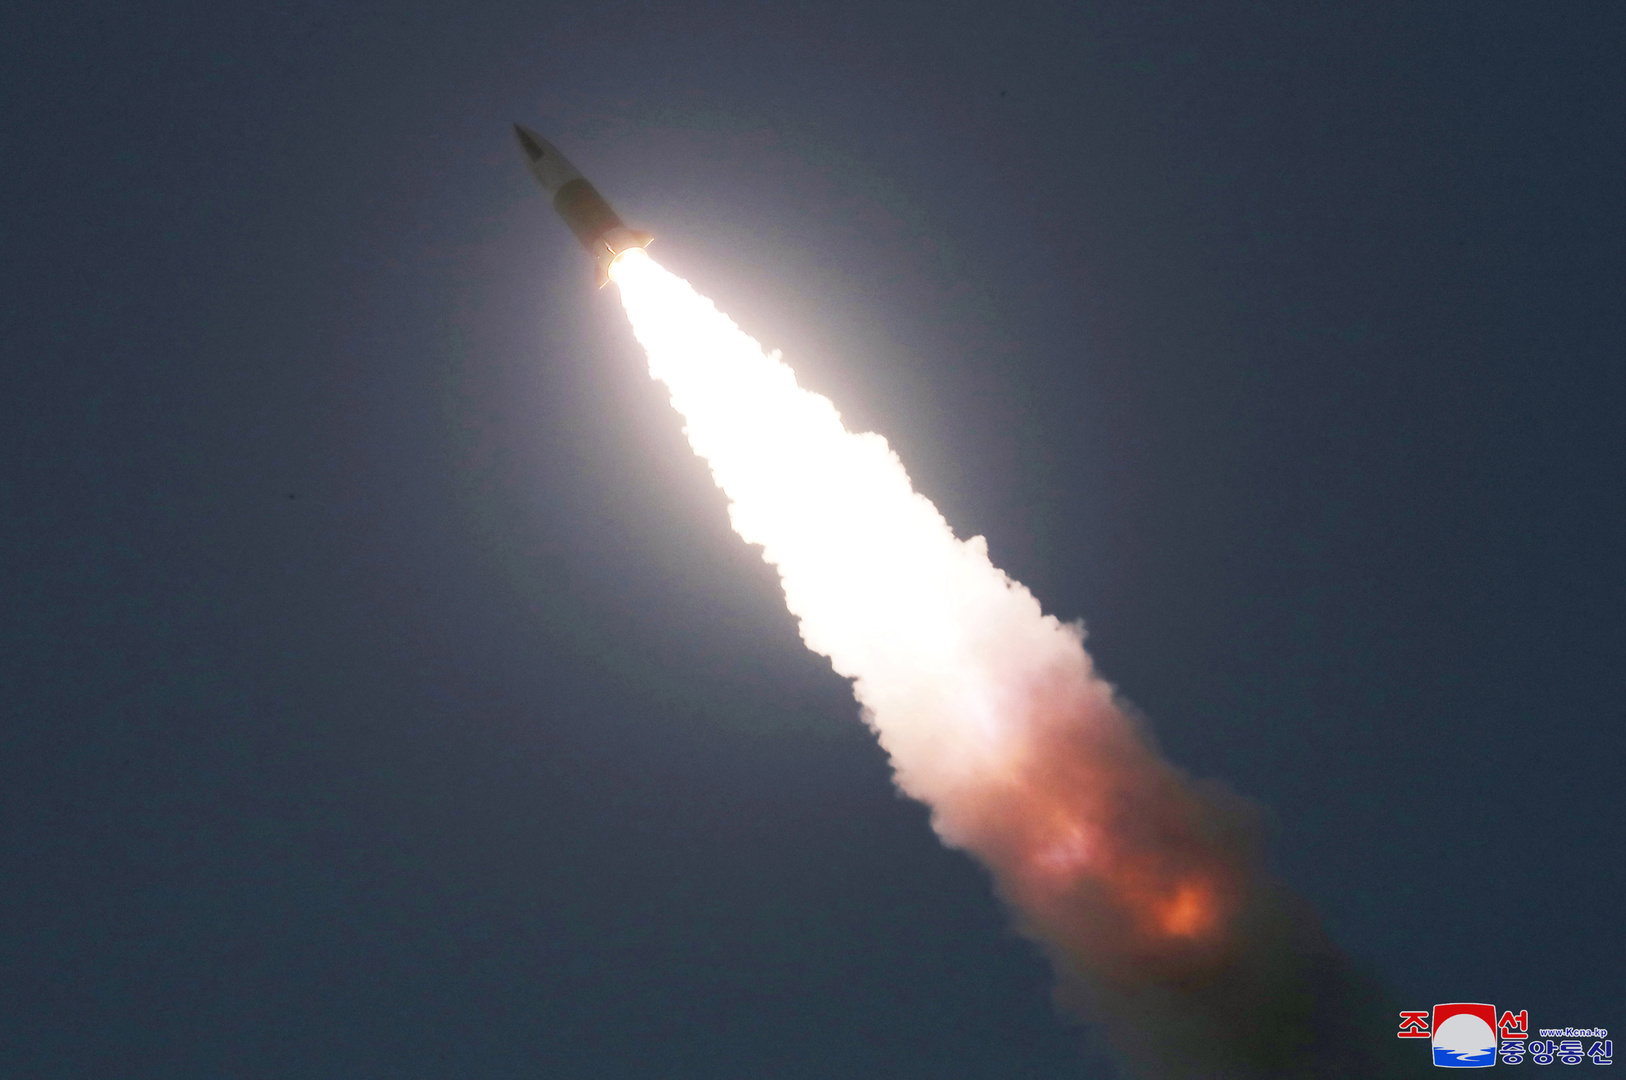 سيئول: يجب توفير أدلة إضافية حول الصواريخ الباليستية الكورية الشمالية